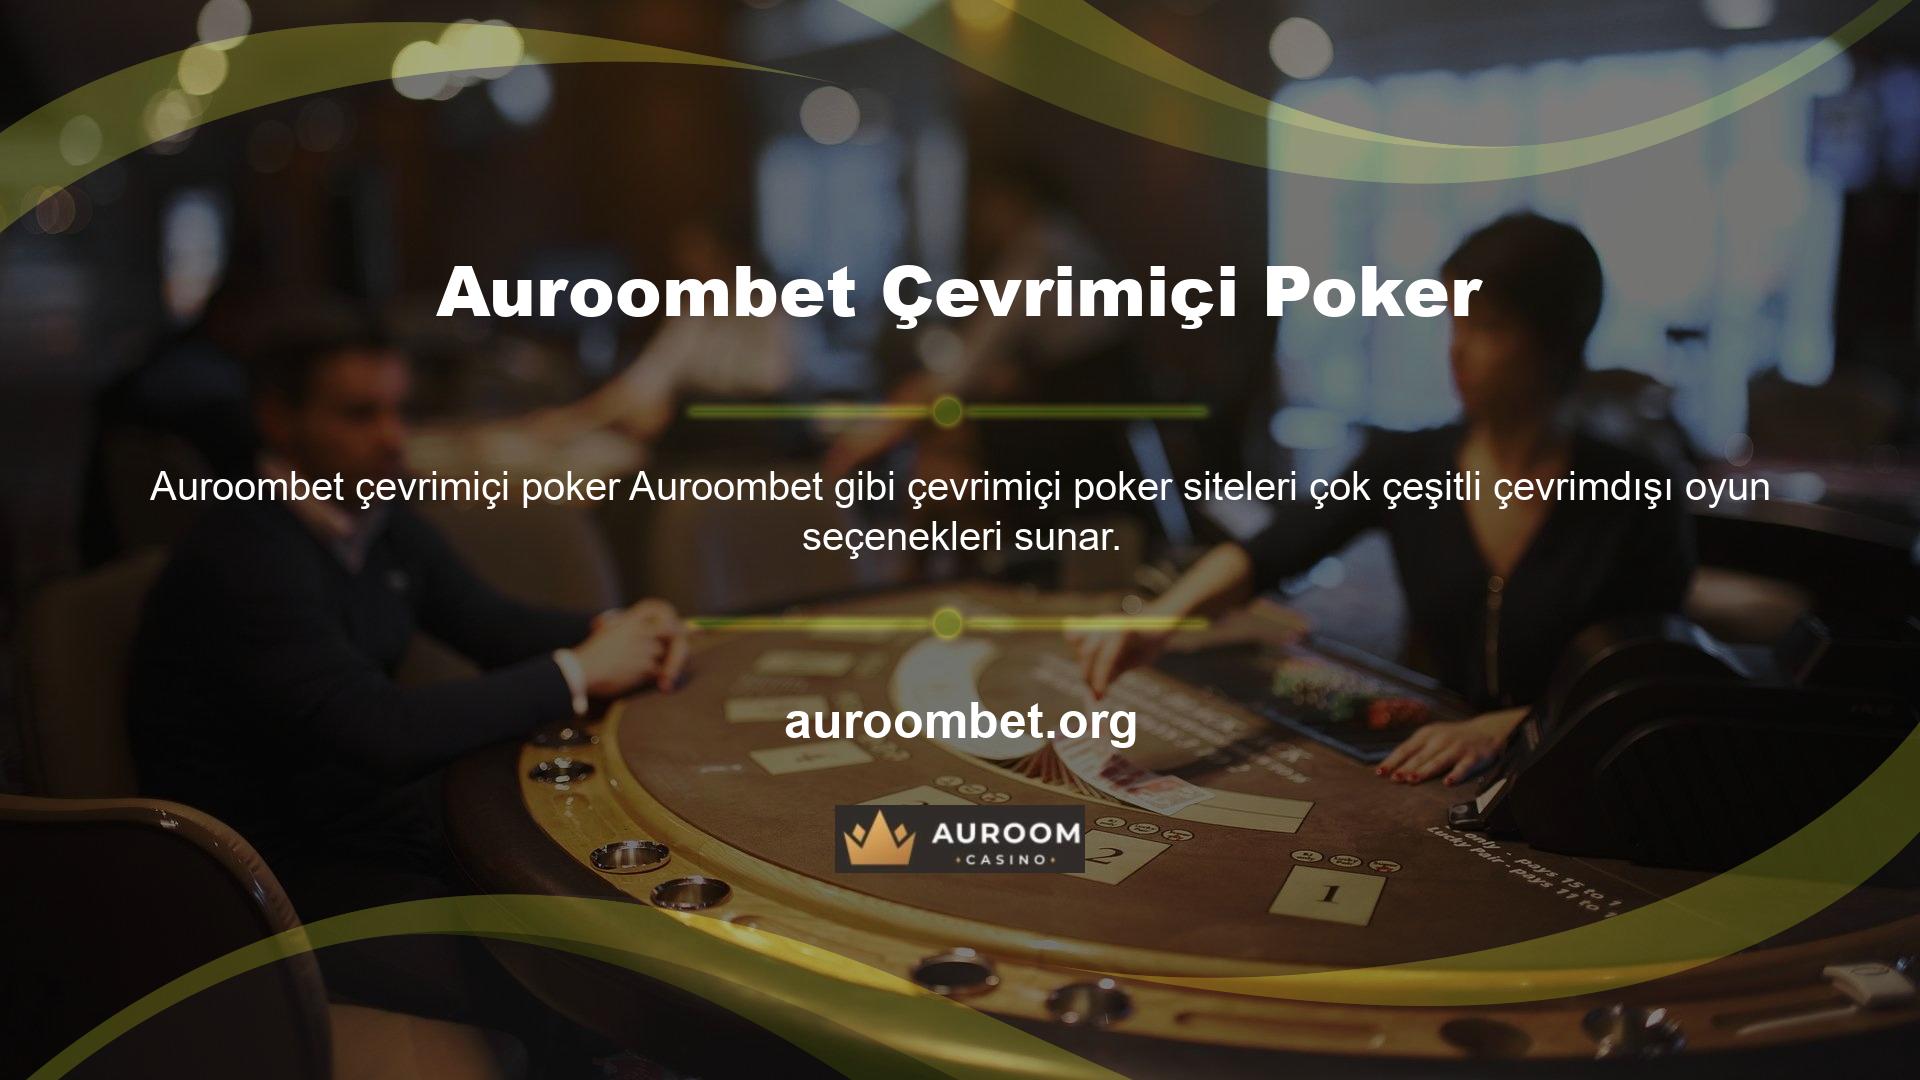 Çevrimdışı bilgisayar oyunları oynama sürecindeyseniz web sitesindeki Auroombet casino kategorisine gidin